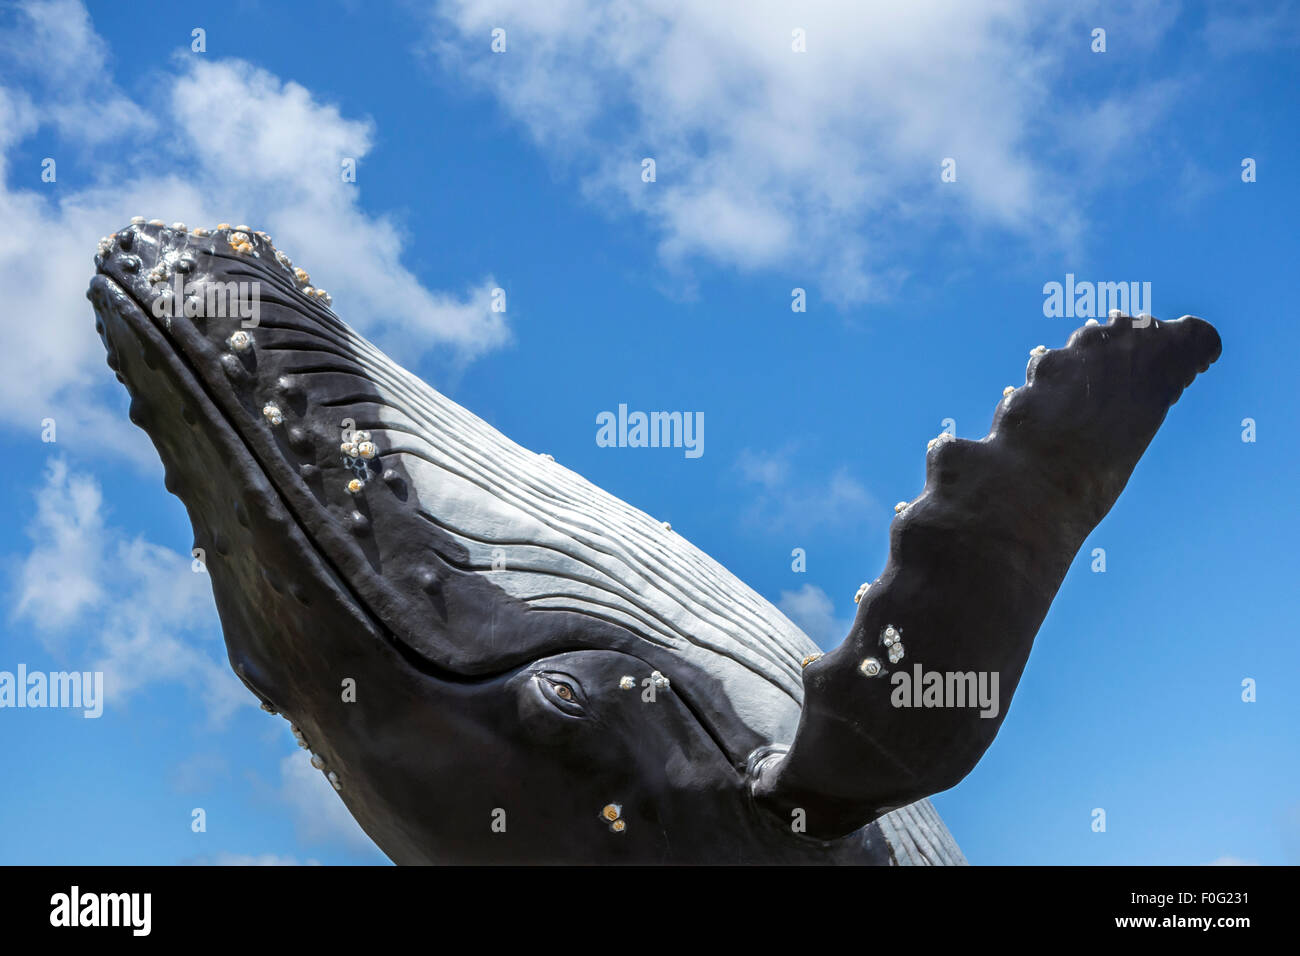 Sculpture de transgression de baleine à bosse (Megaptera novaeangliae) contre le ciel bleu Banque D'Images